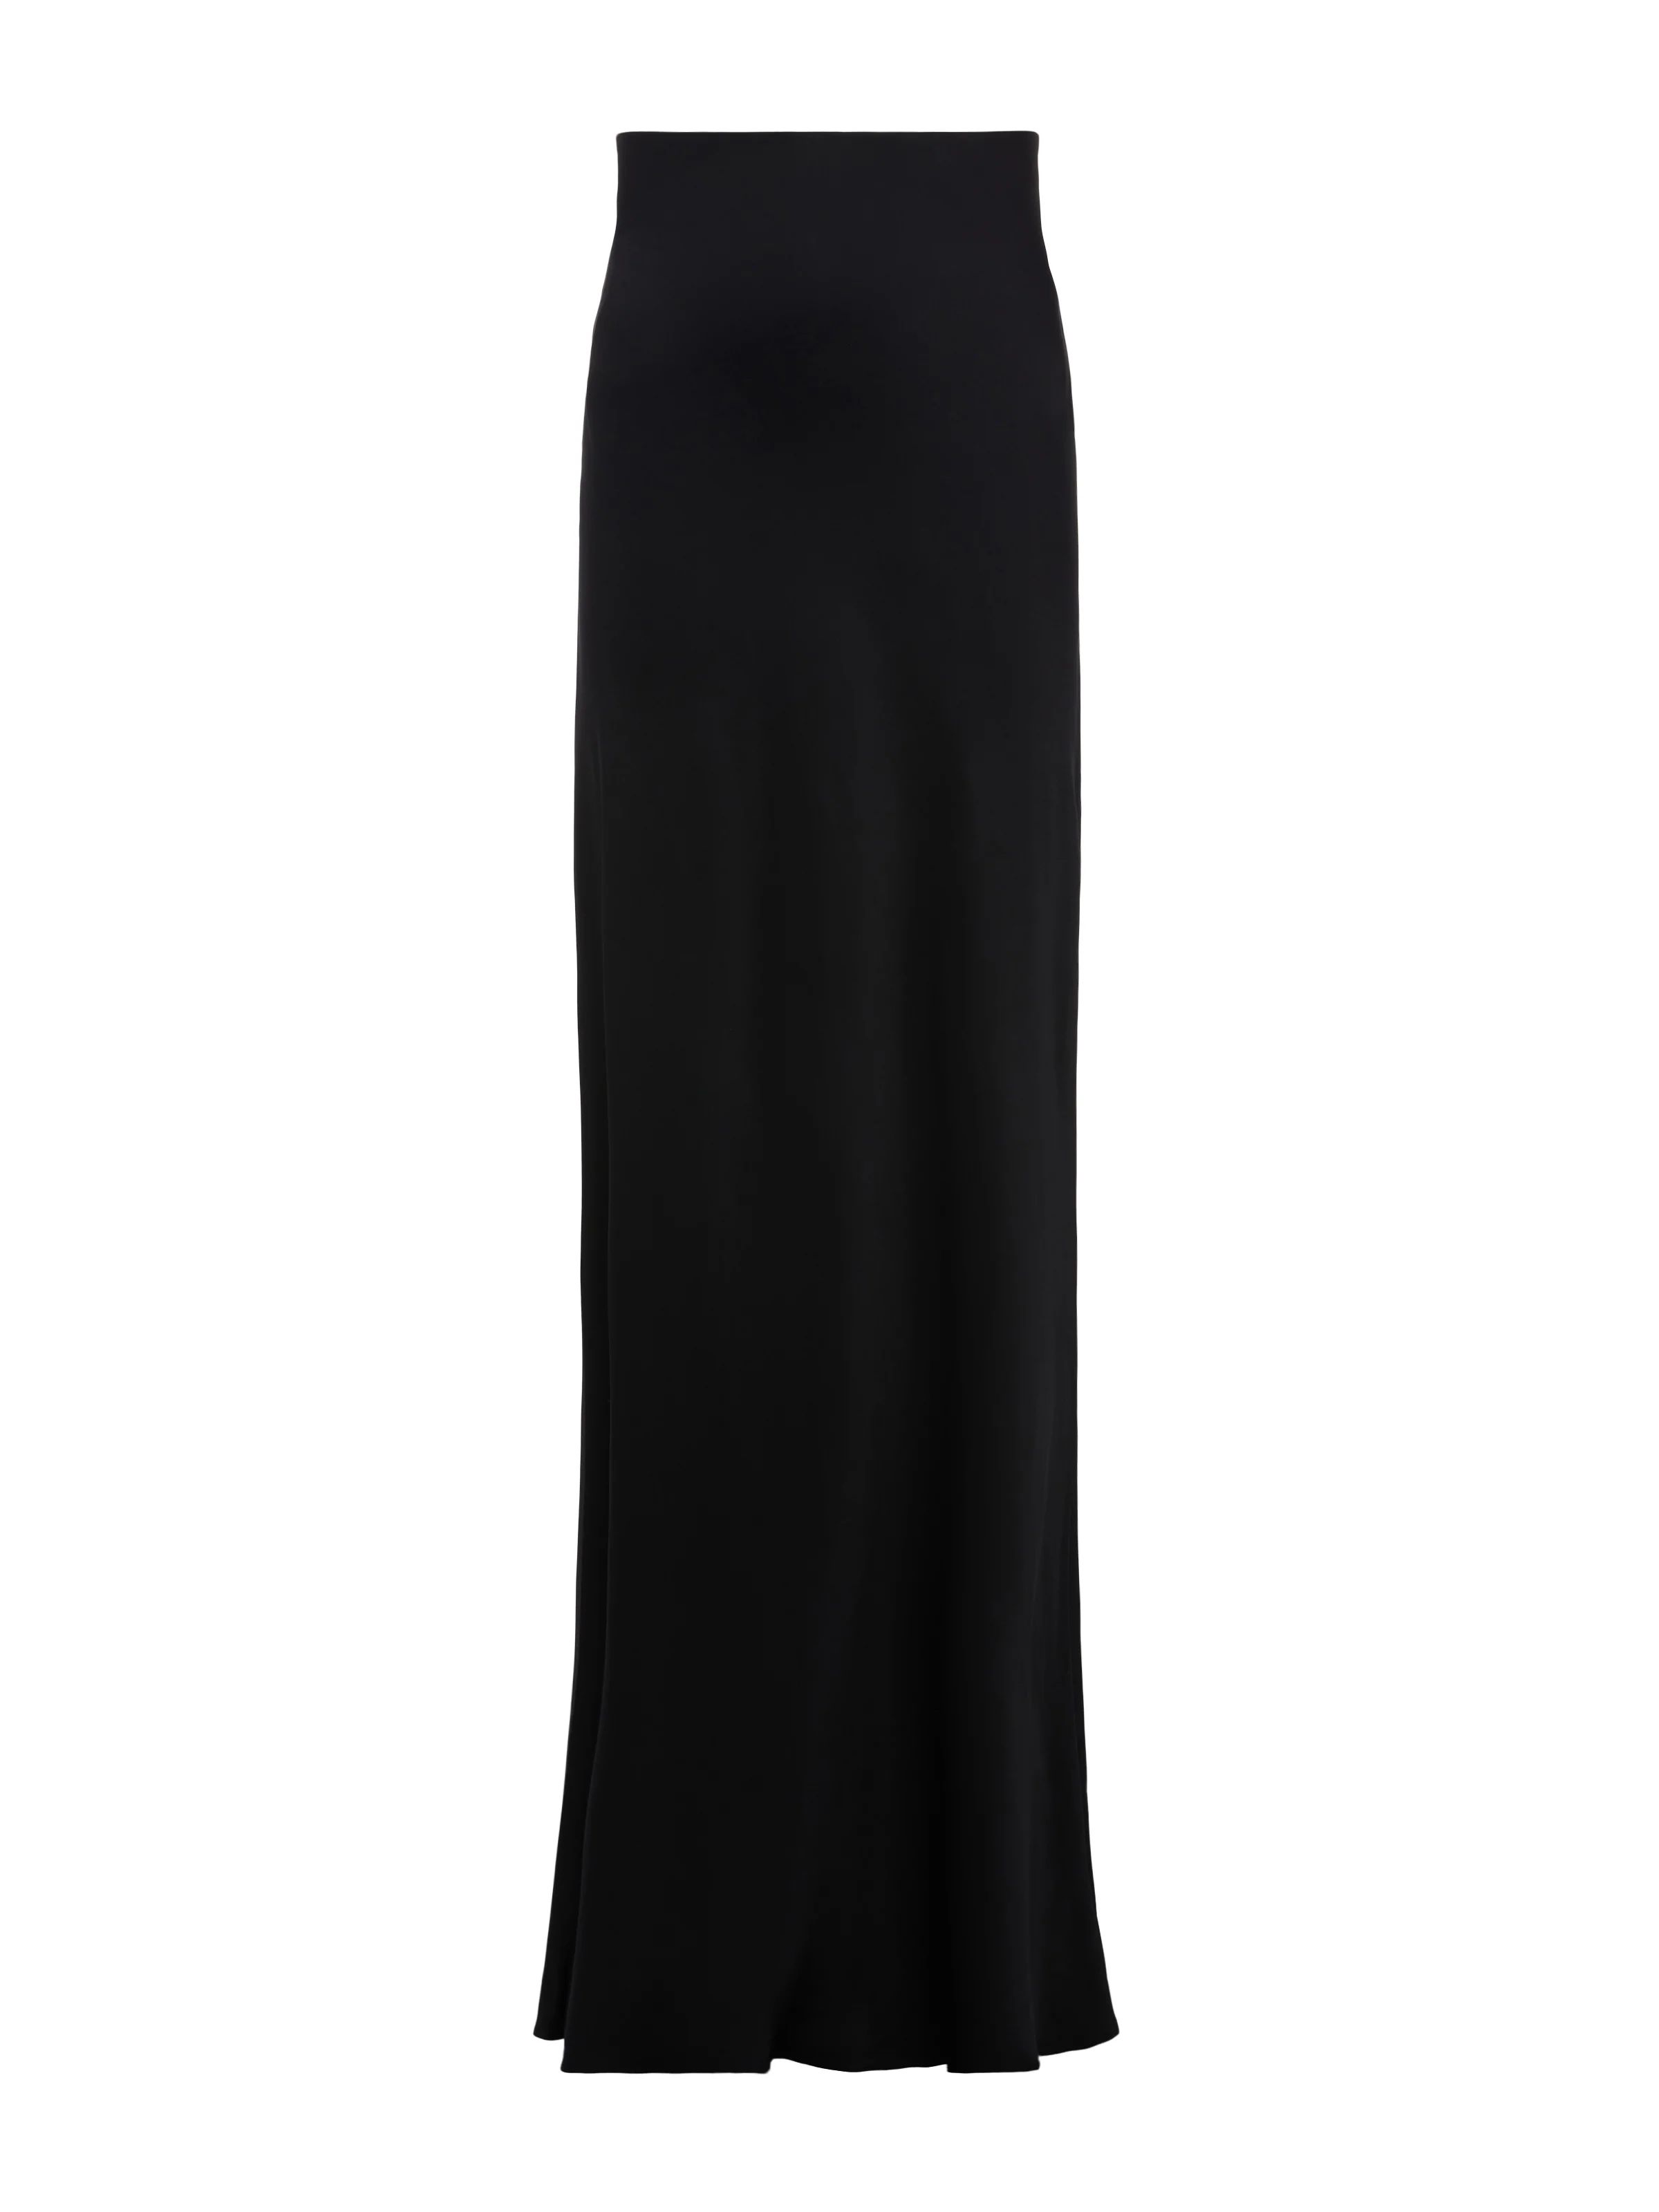 L'AGENCE Zeta Skirt In Black | L'Agence